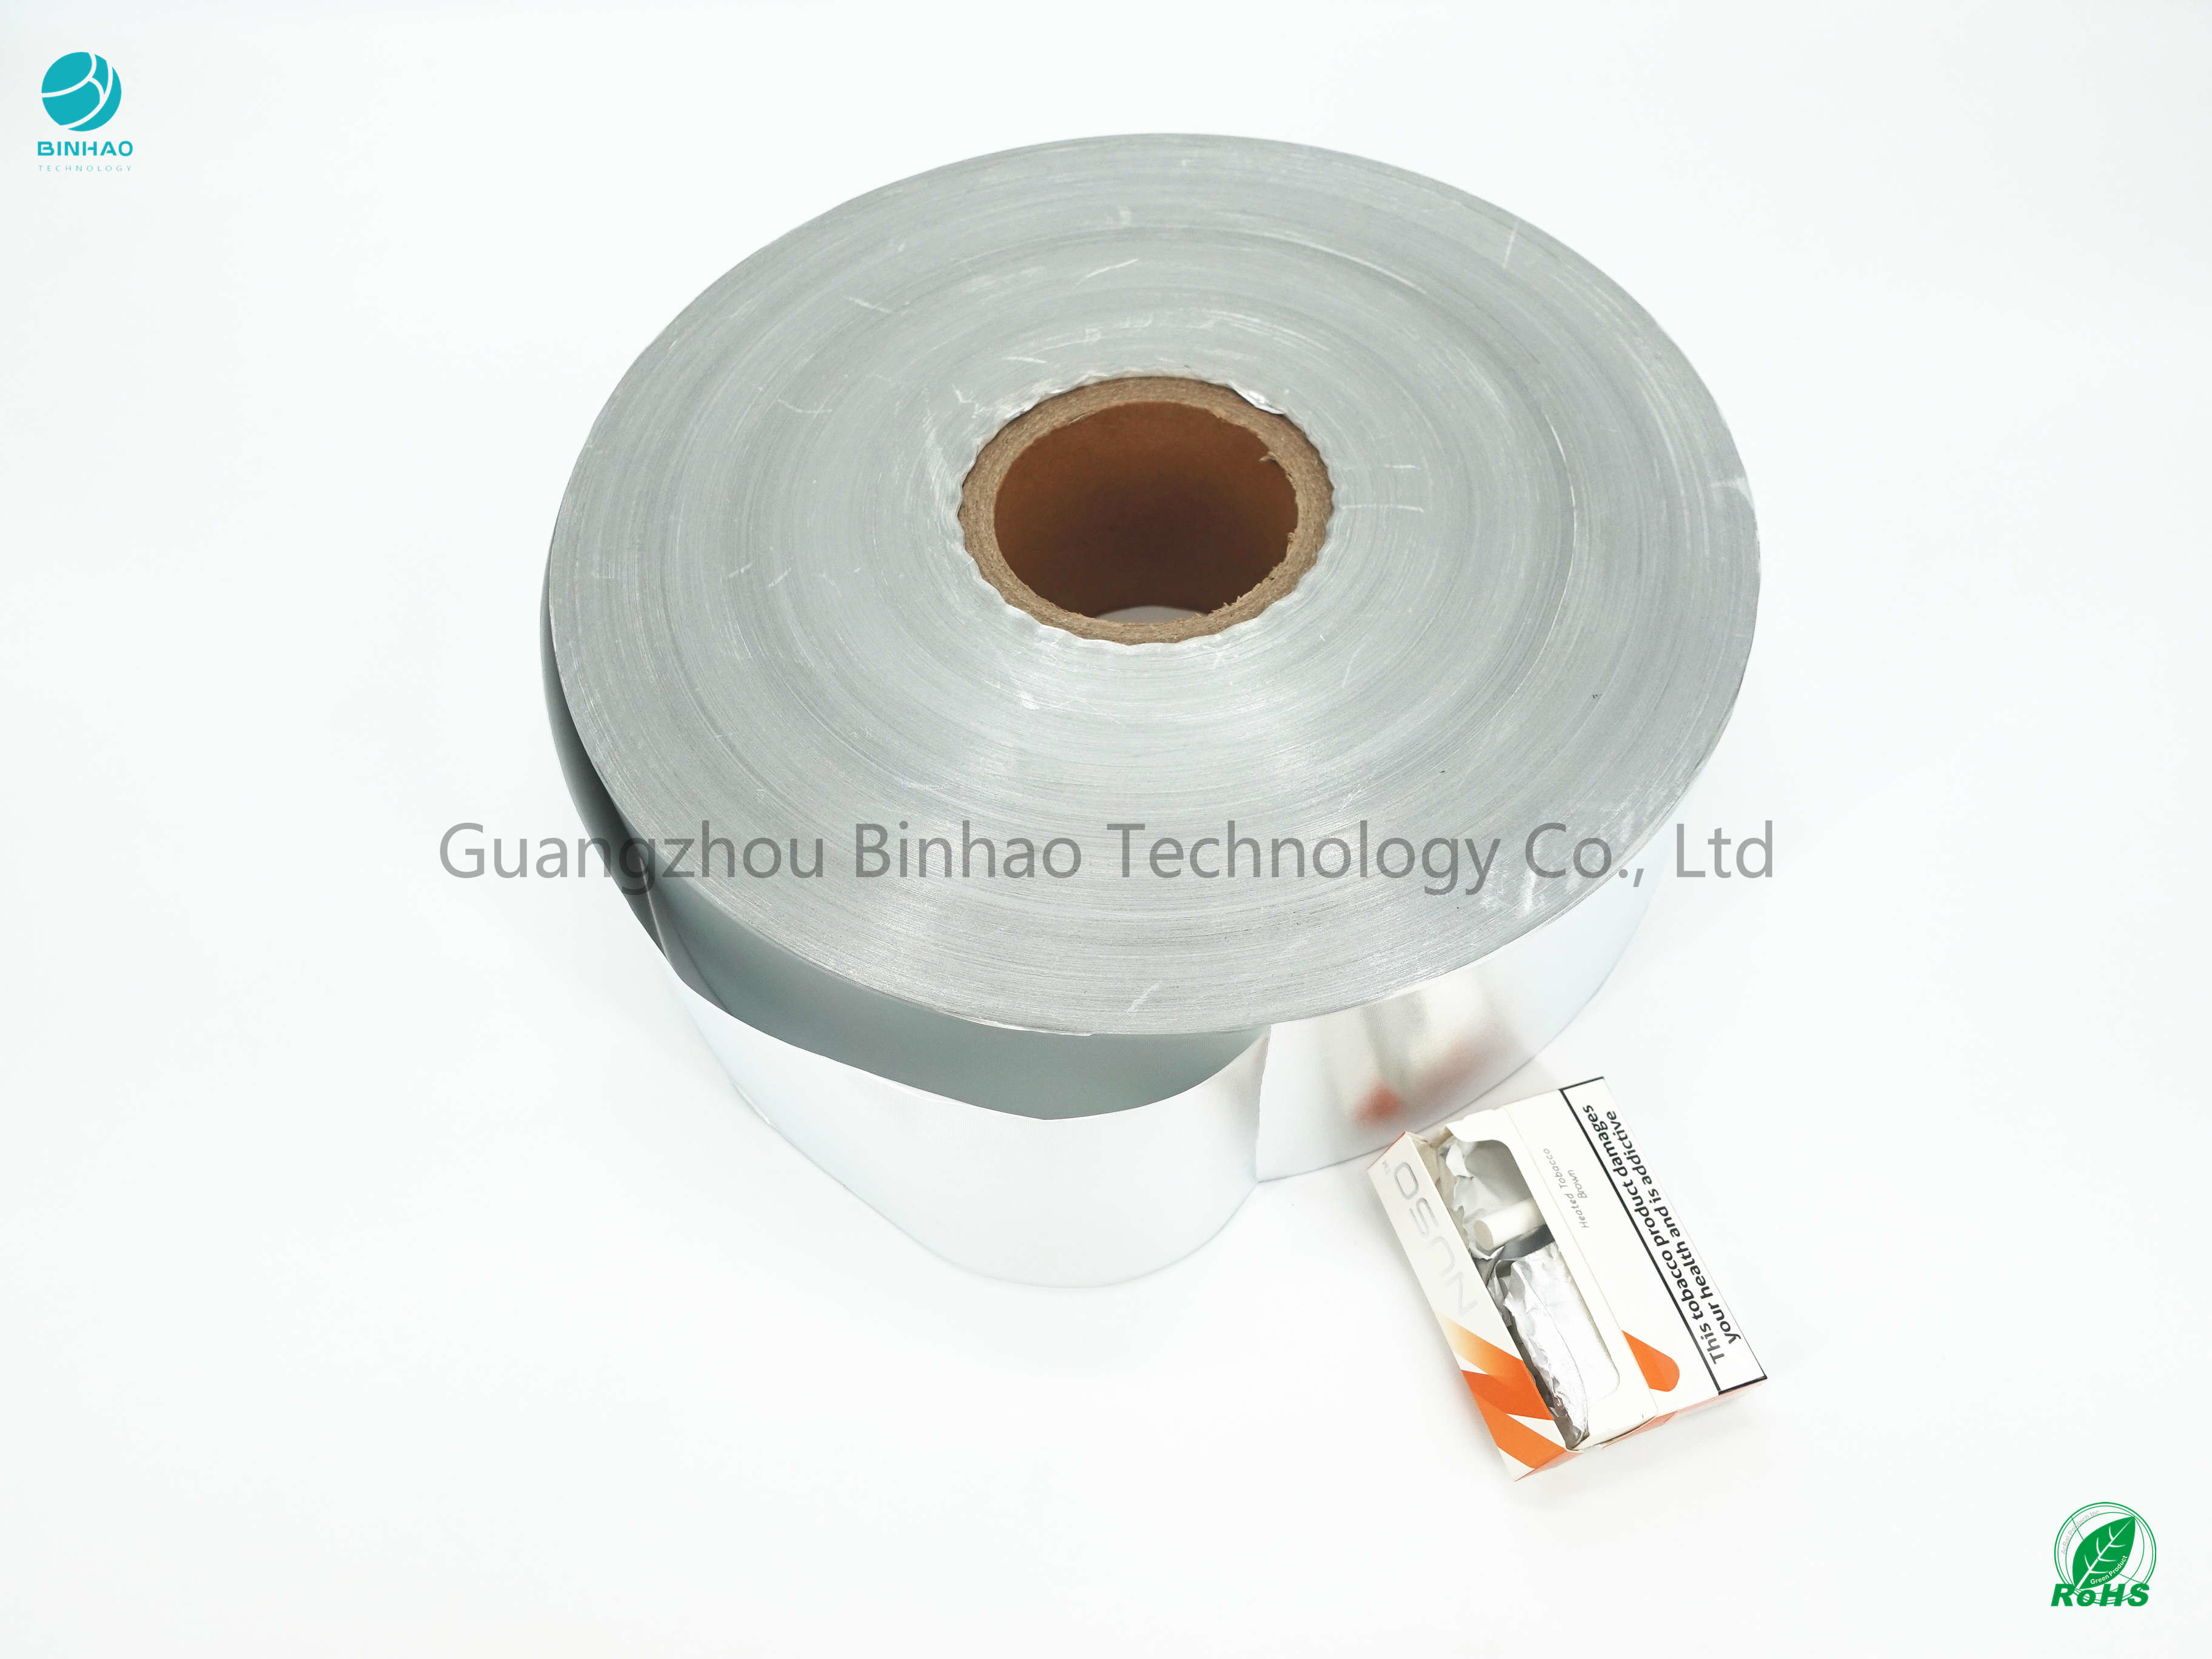 محصول بسته بندی سیگار الکترونیکی HNB کاغذ فویل آلومینیومی 76 میلیمتر هسته داخلی